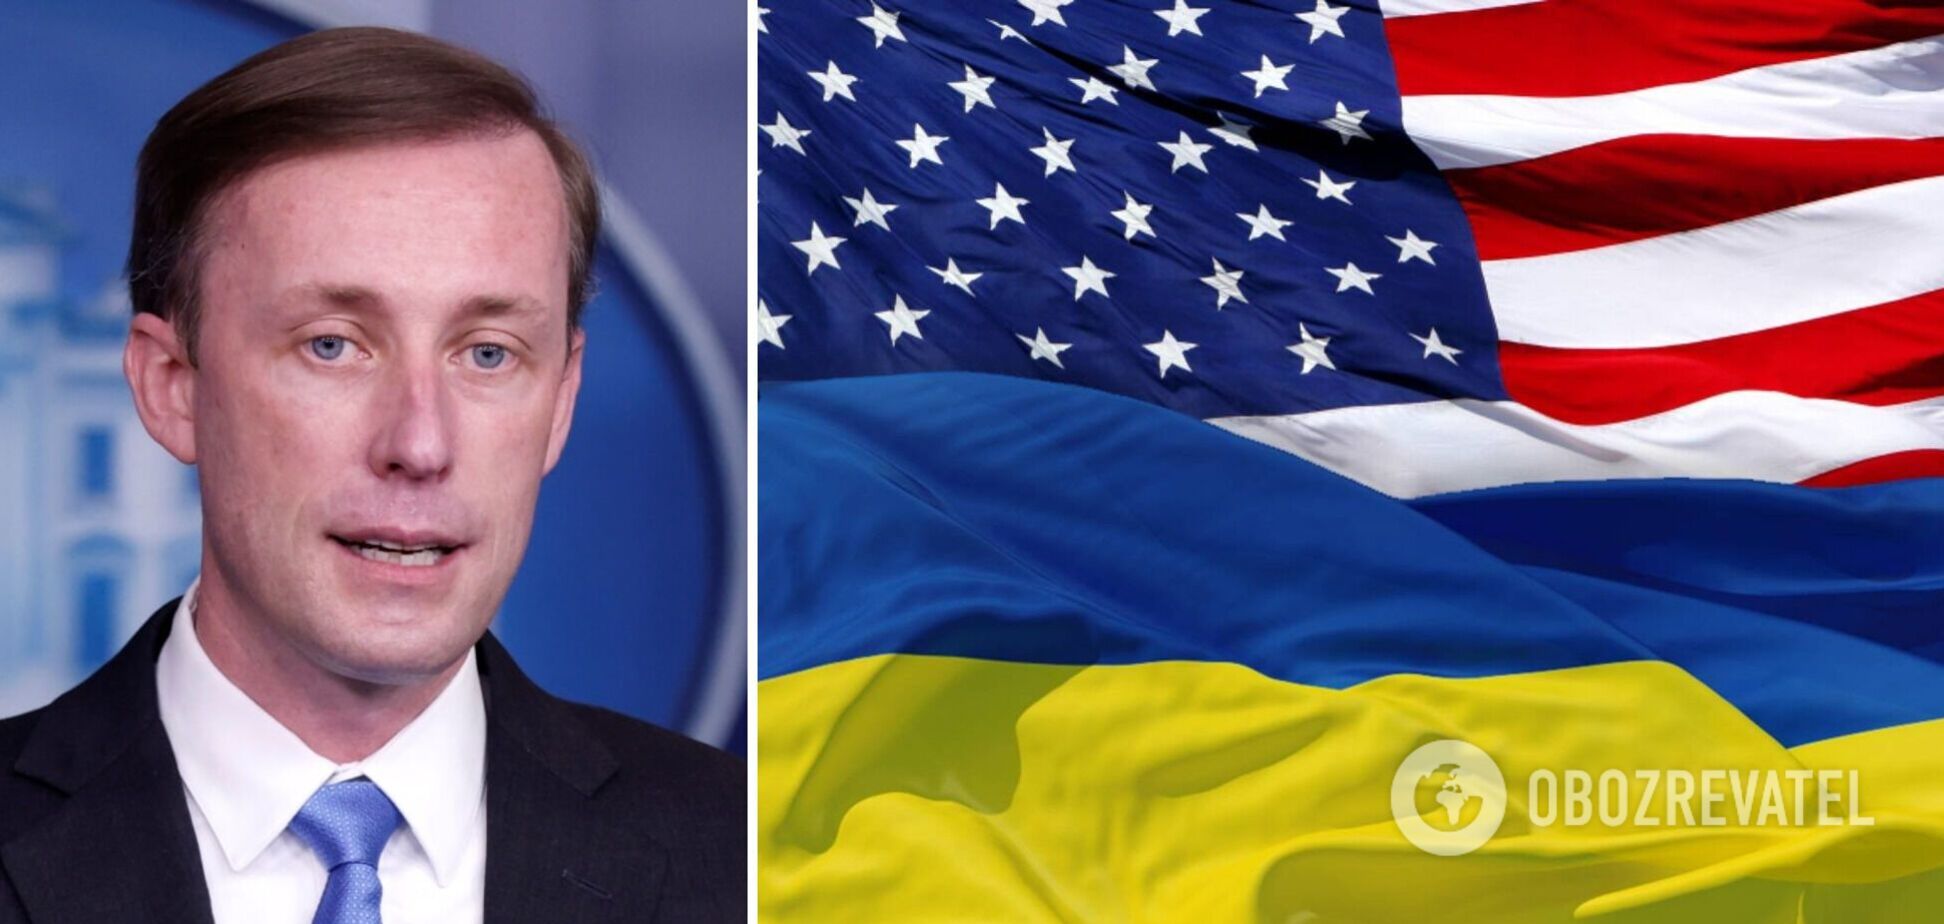  Салливан заверил, что США продолжат поддерживать Украину